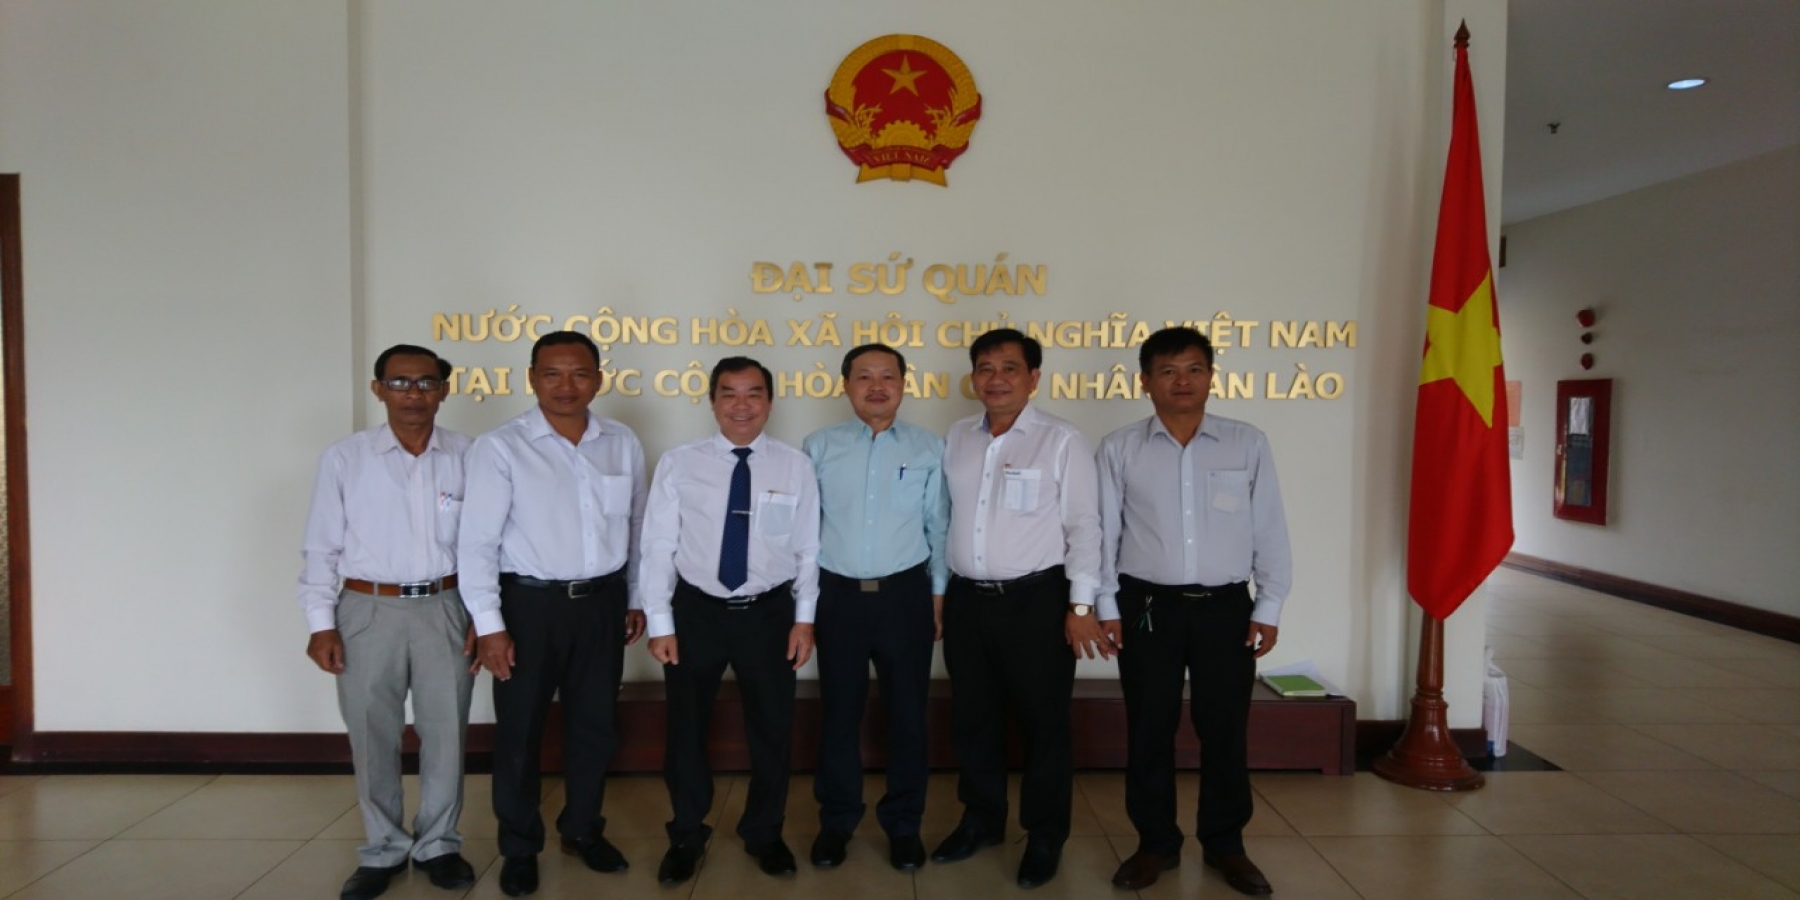  Thăm và ký kết hợp tác với Đại học Quốc gia Cộng hòa dân chủ nhân dân Lào